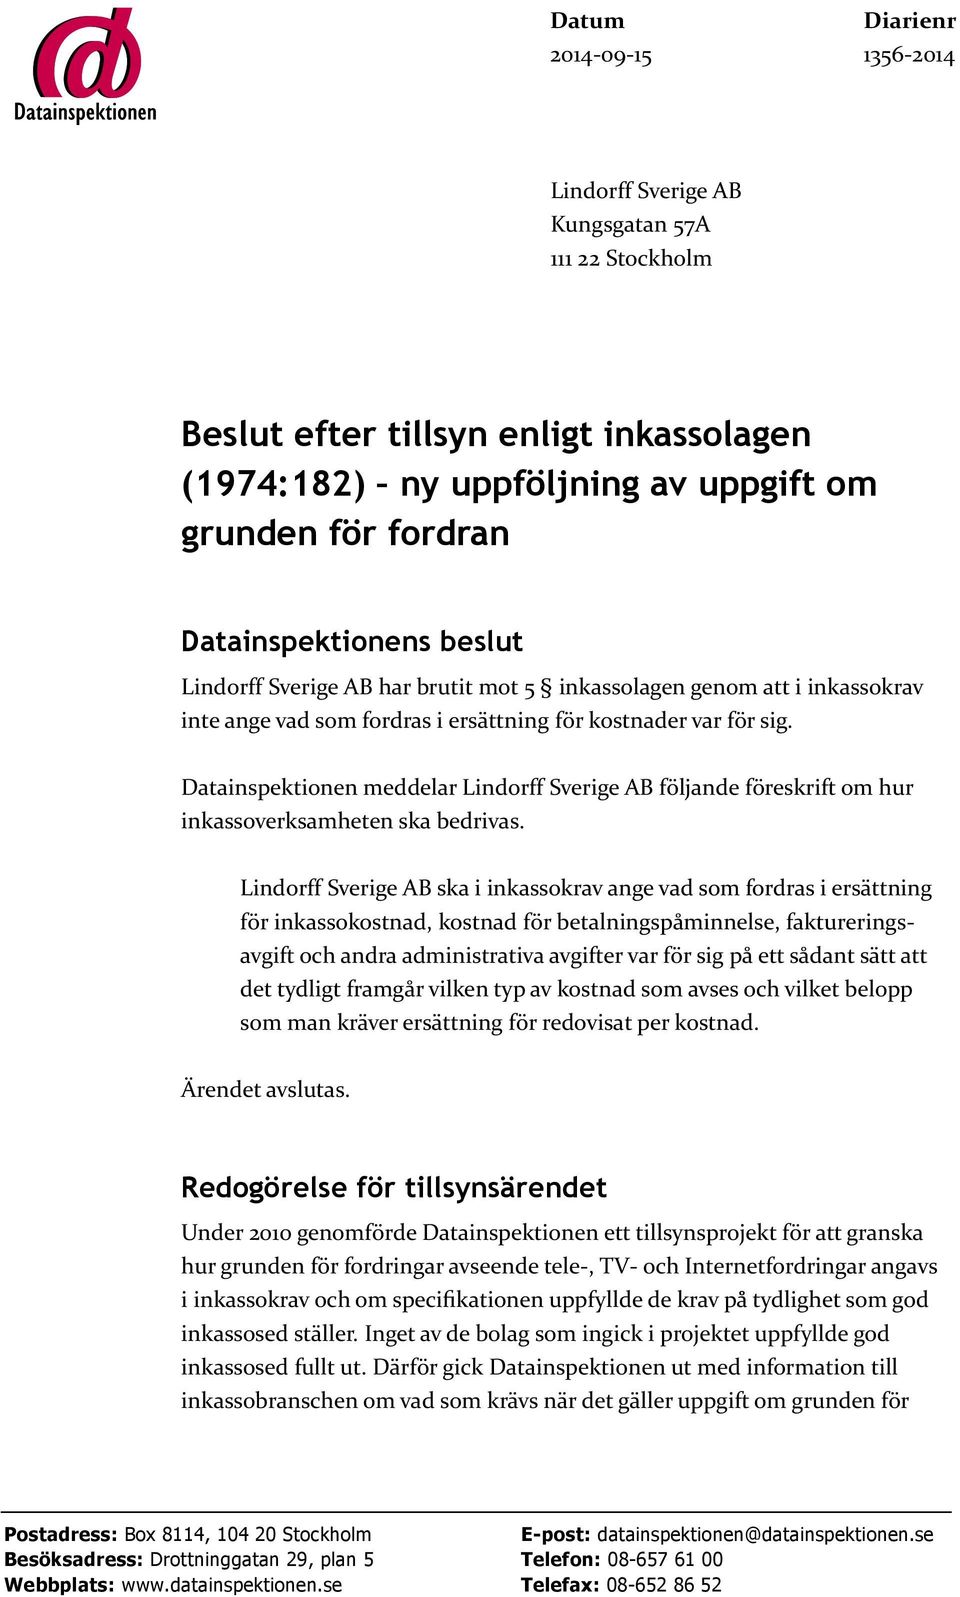 Datainspektionen meddelar Lindorff Sverige AB följande föreskrift om hur inkassoverksamheten ska bedrivas.